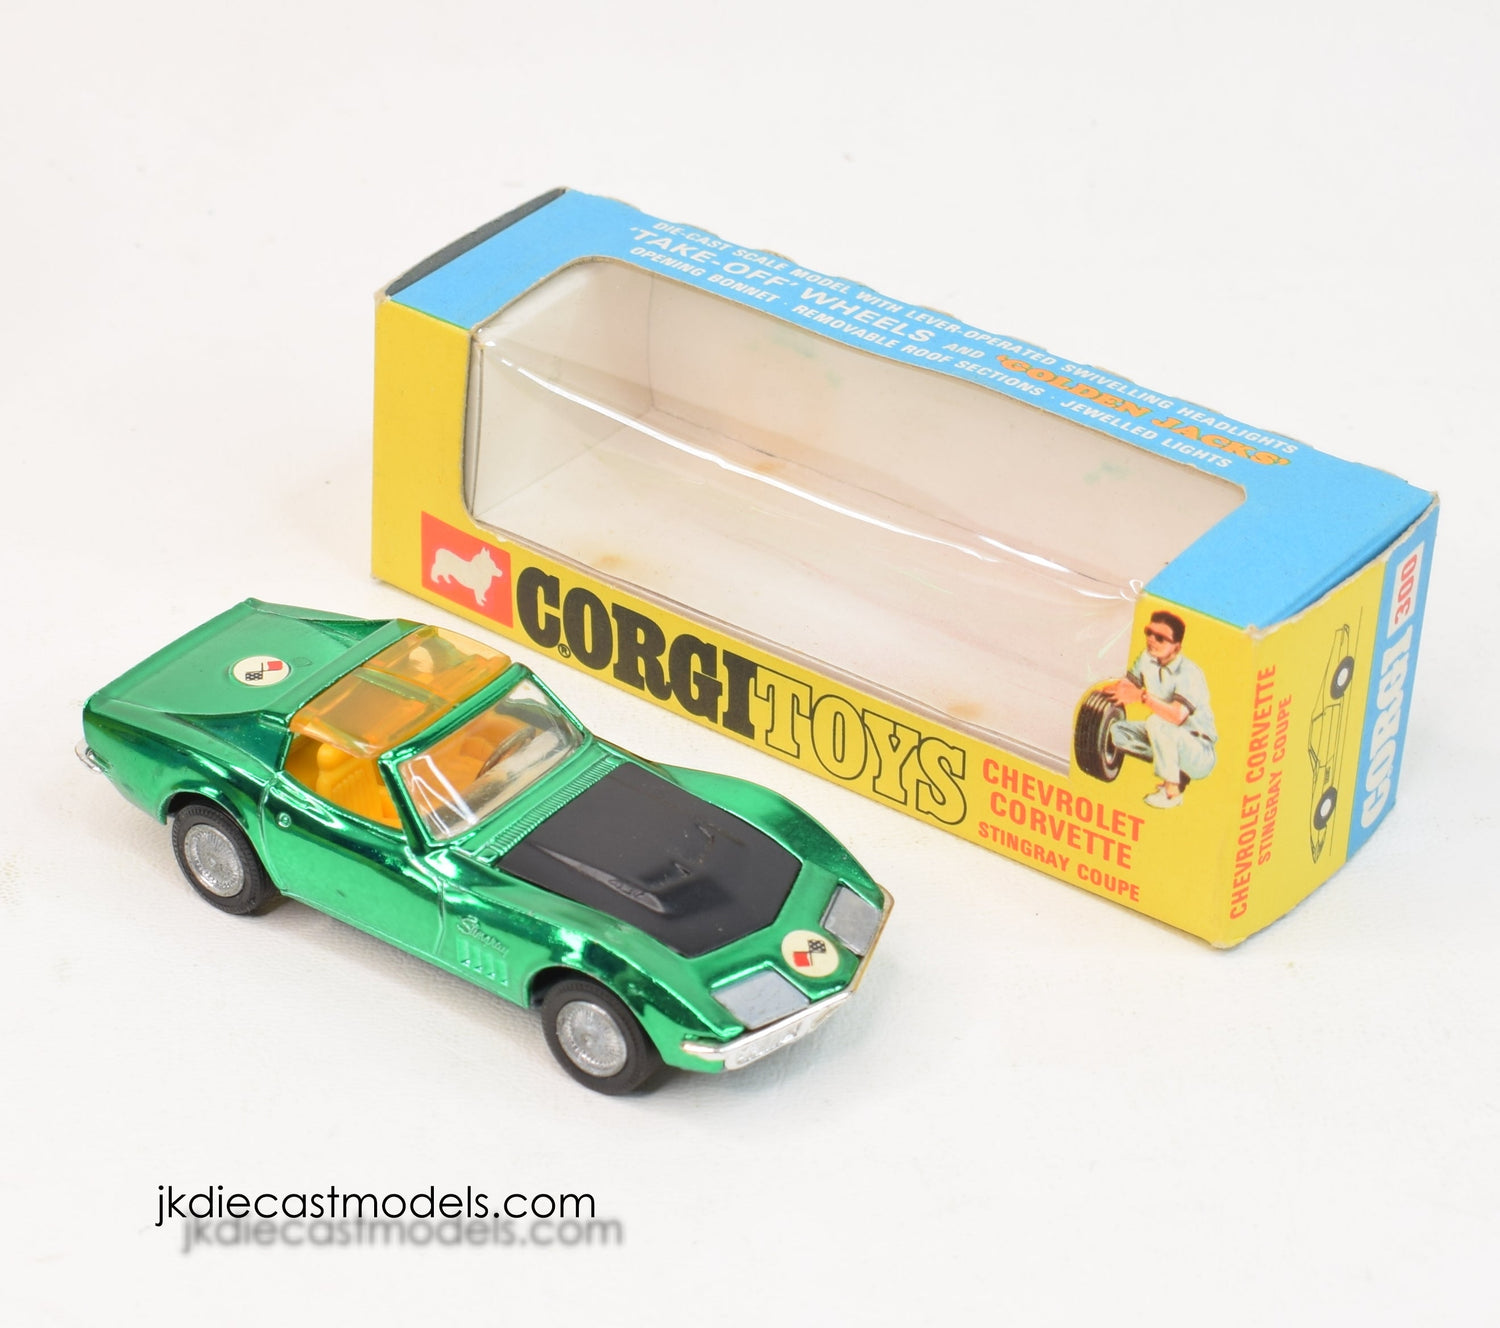 Corgi toys 300 Corvette Stingray Virtually Mint/Lovely box